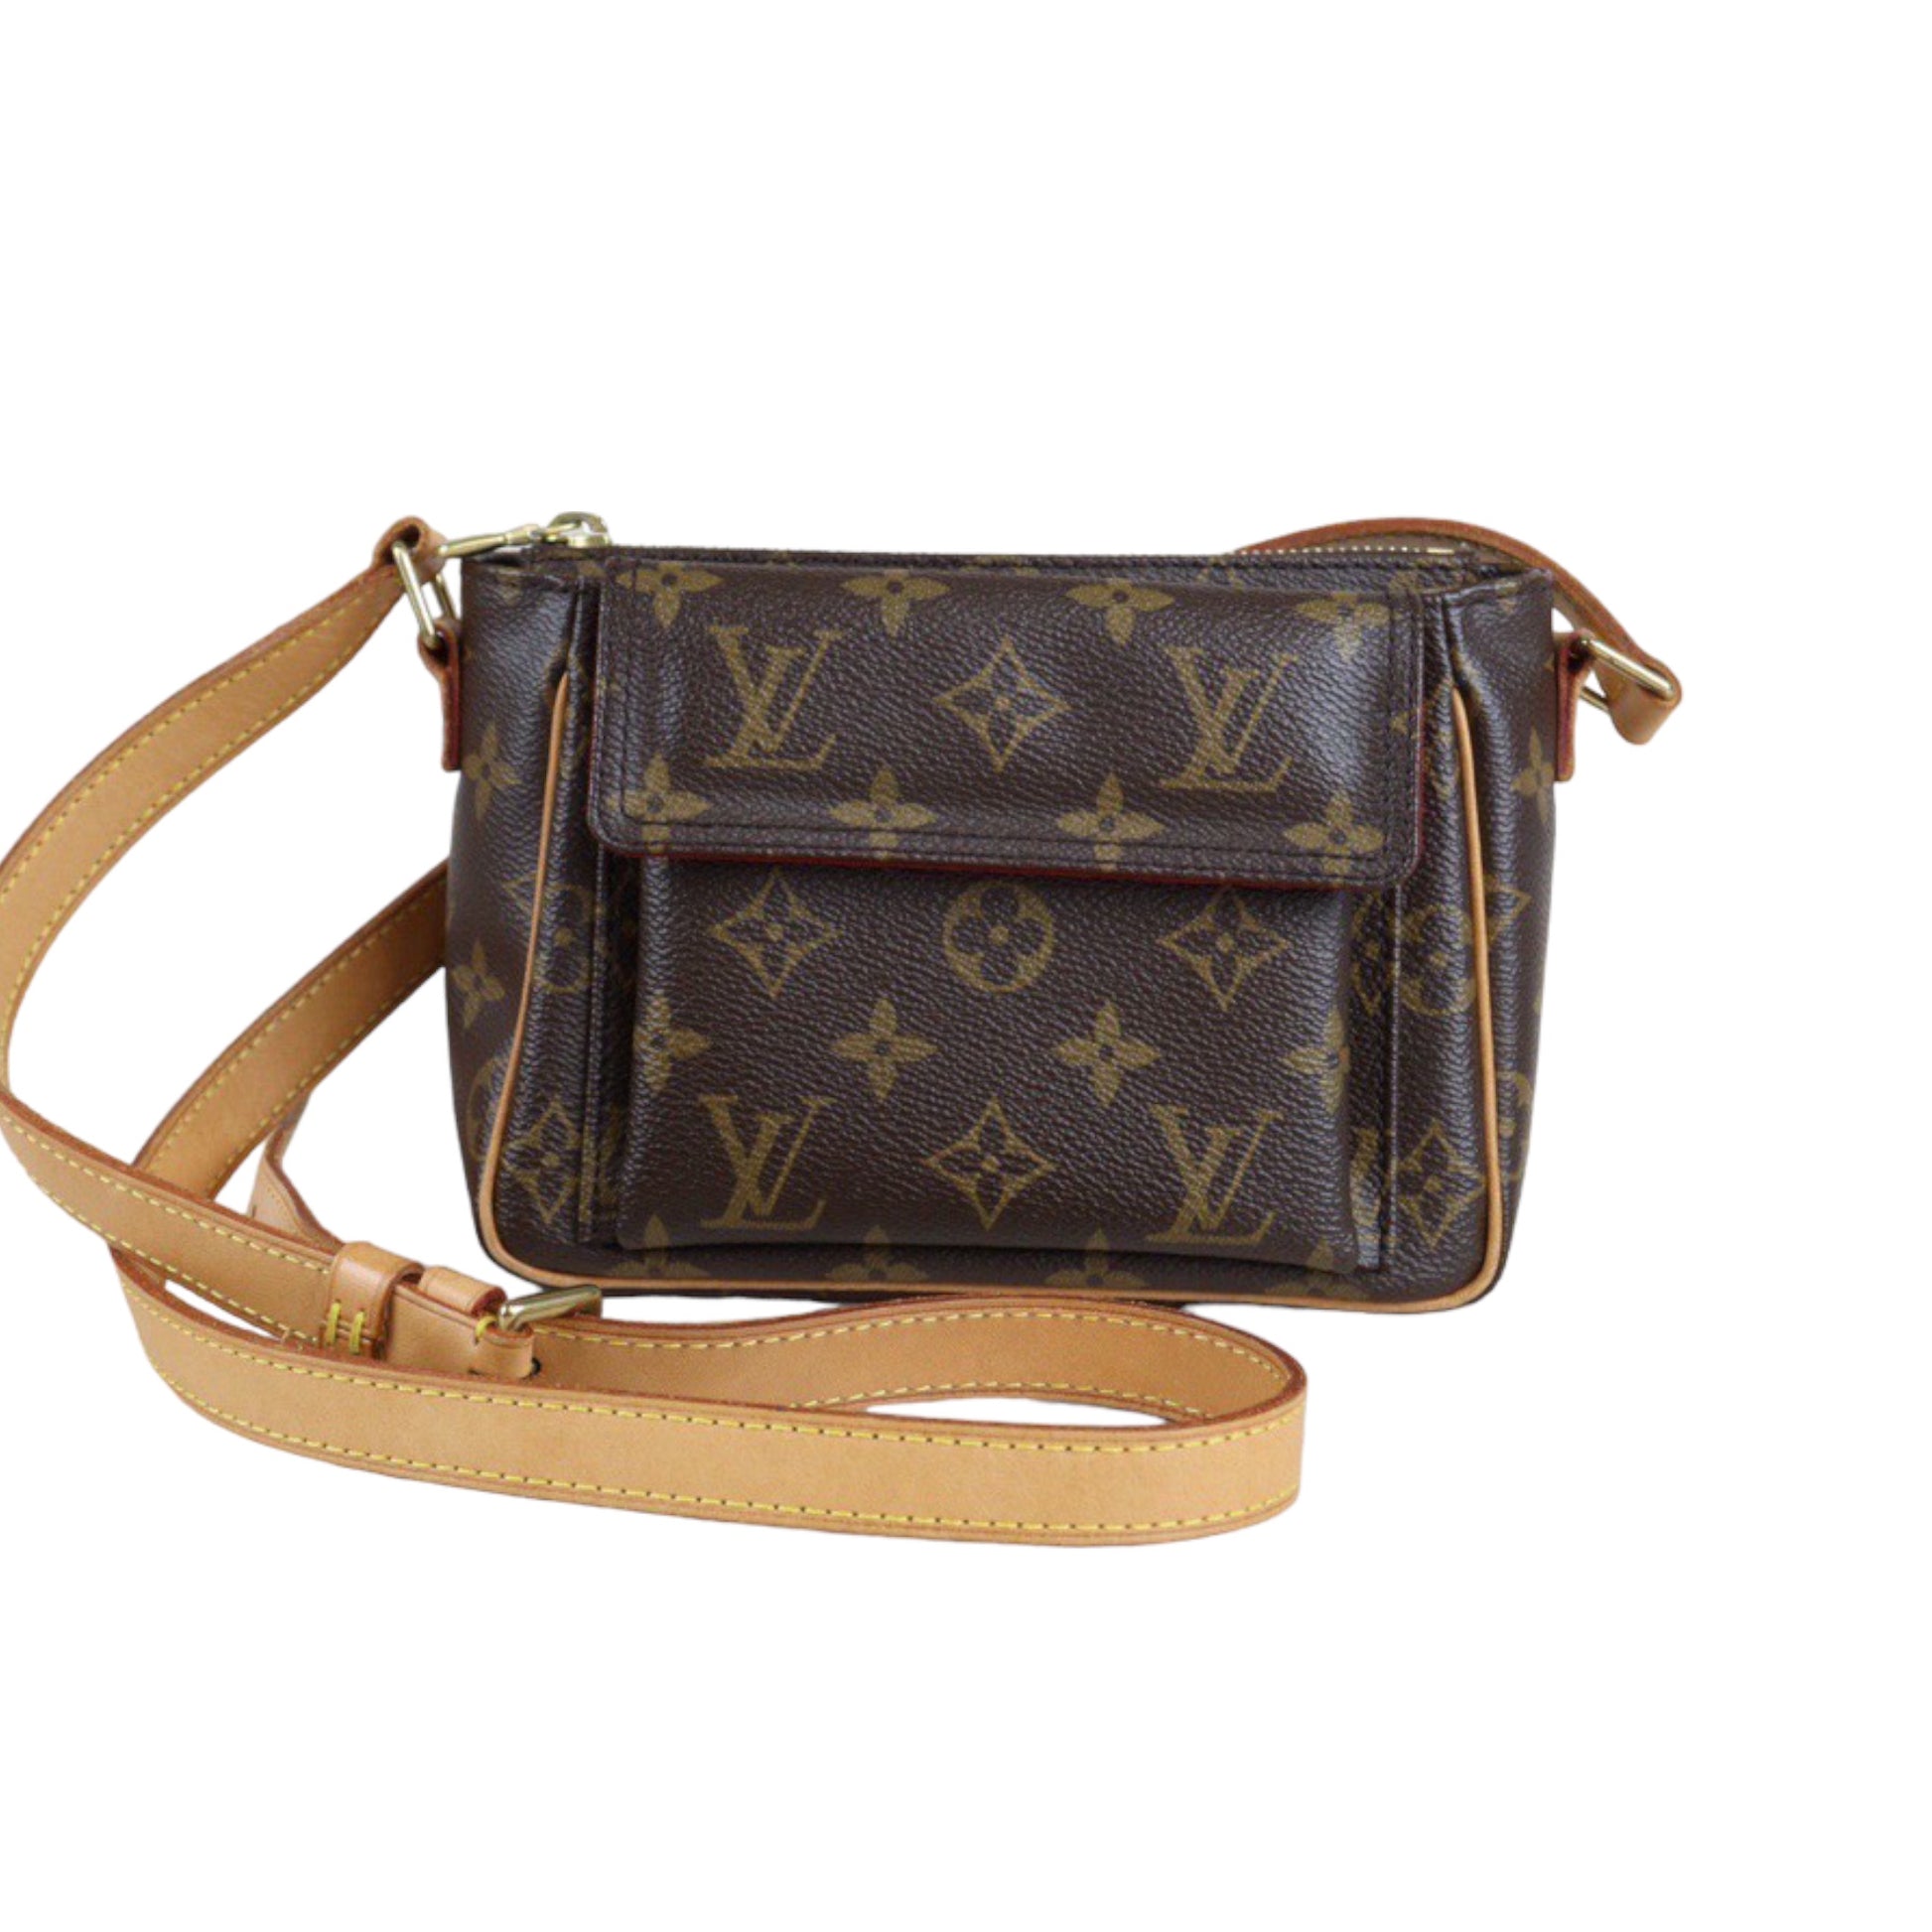 Louis Vuitton Viva Cite PM Shoulder Bag - Brown